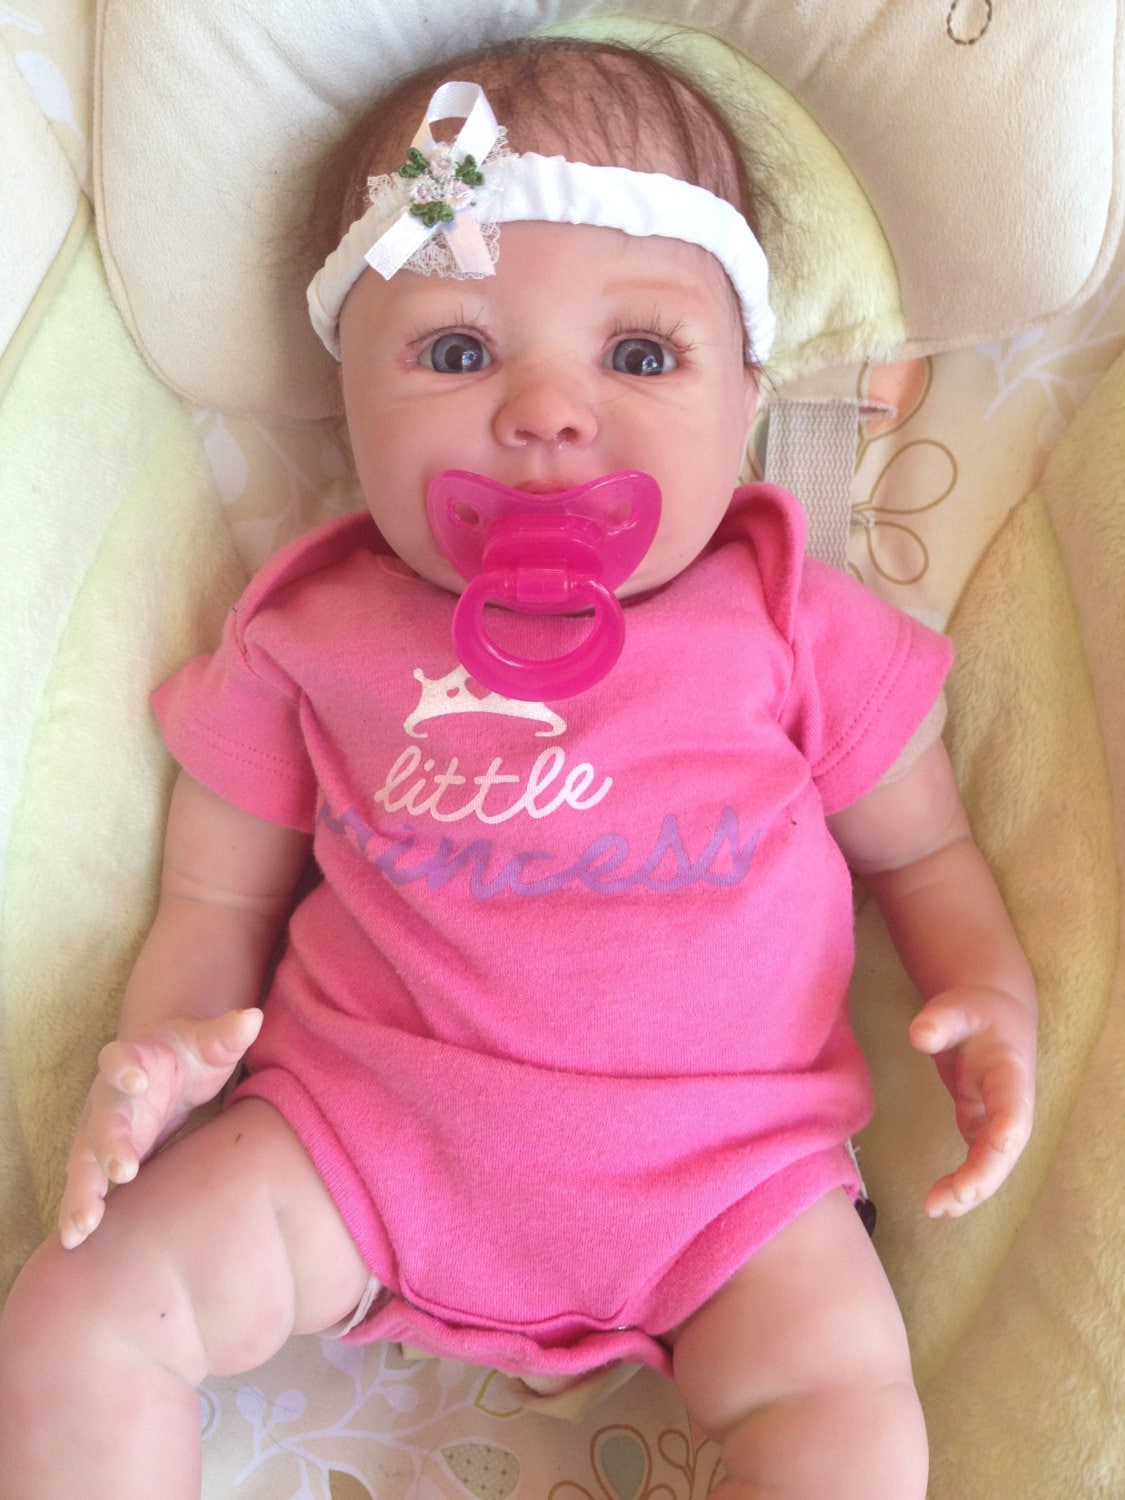 elisa marx reborn twins | REBORN BABY DOLLS & BABY CLOTHES ...